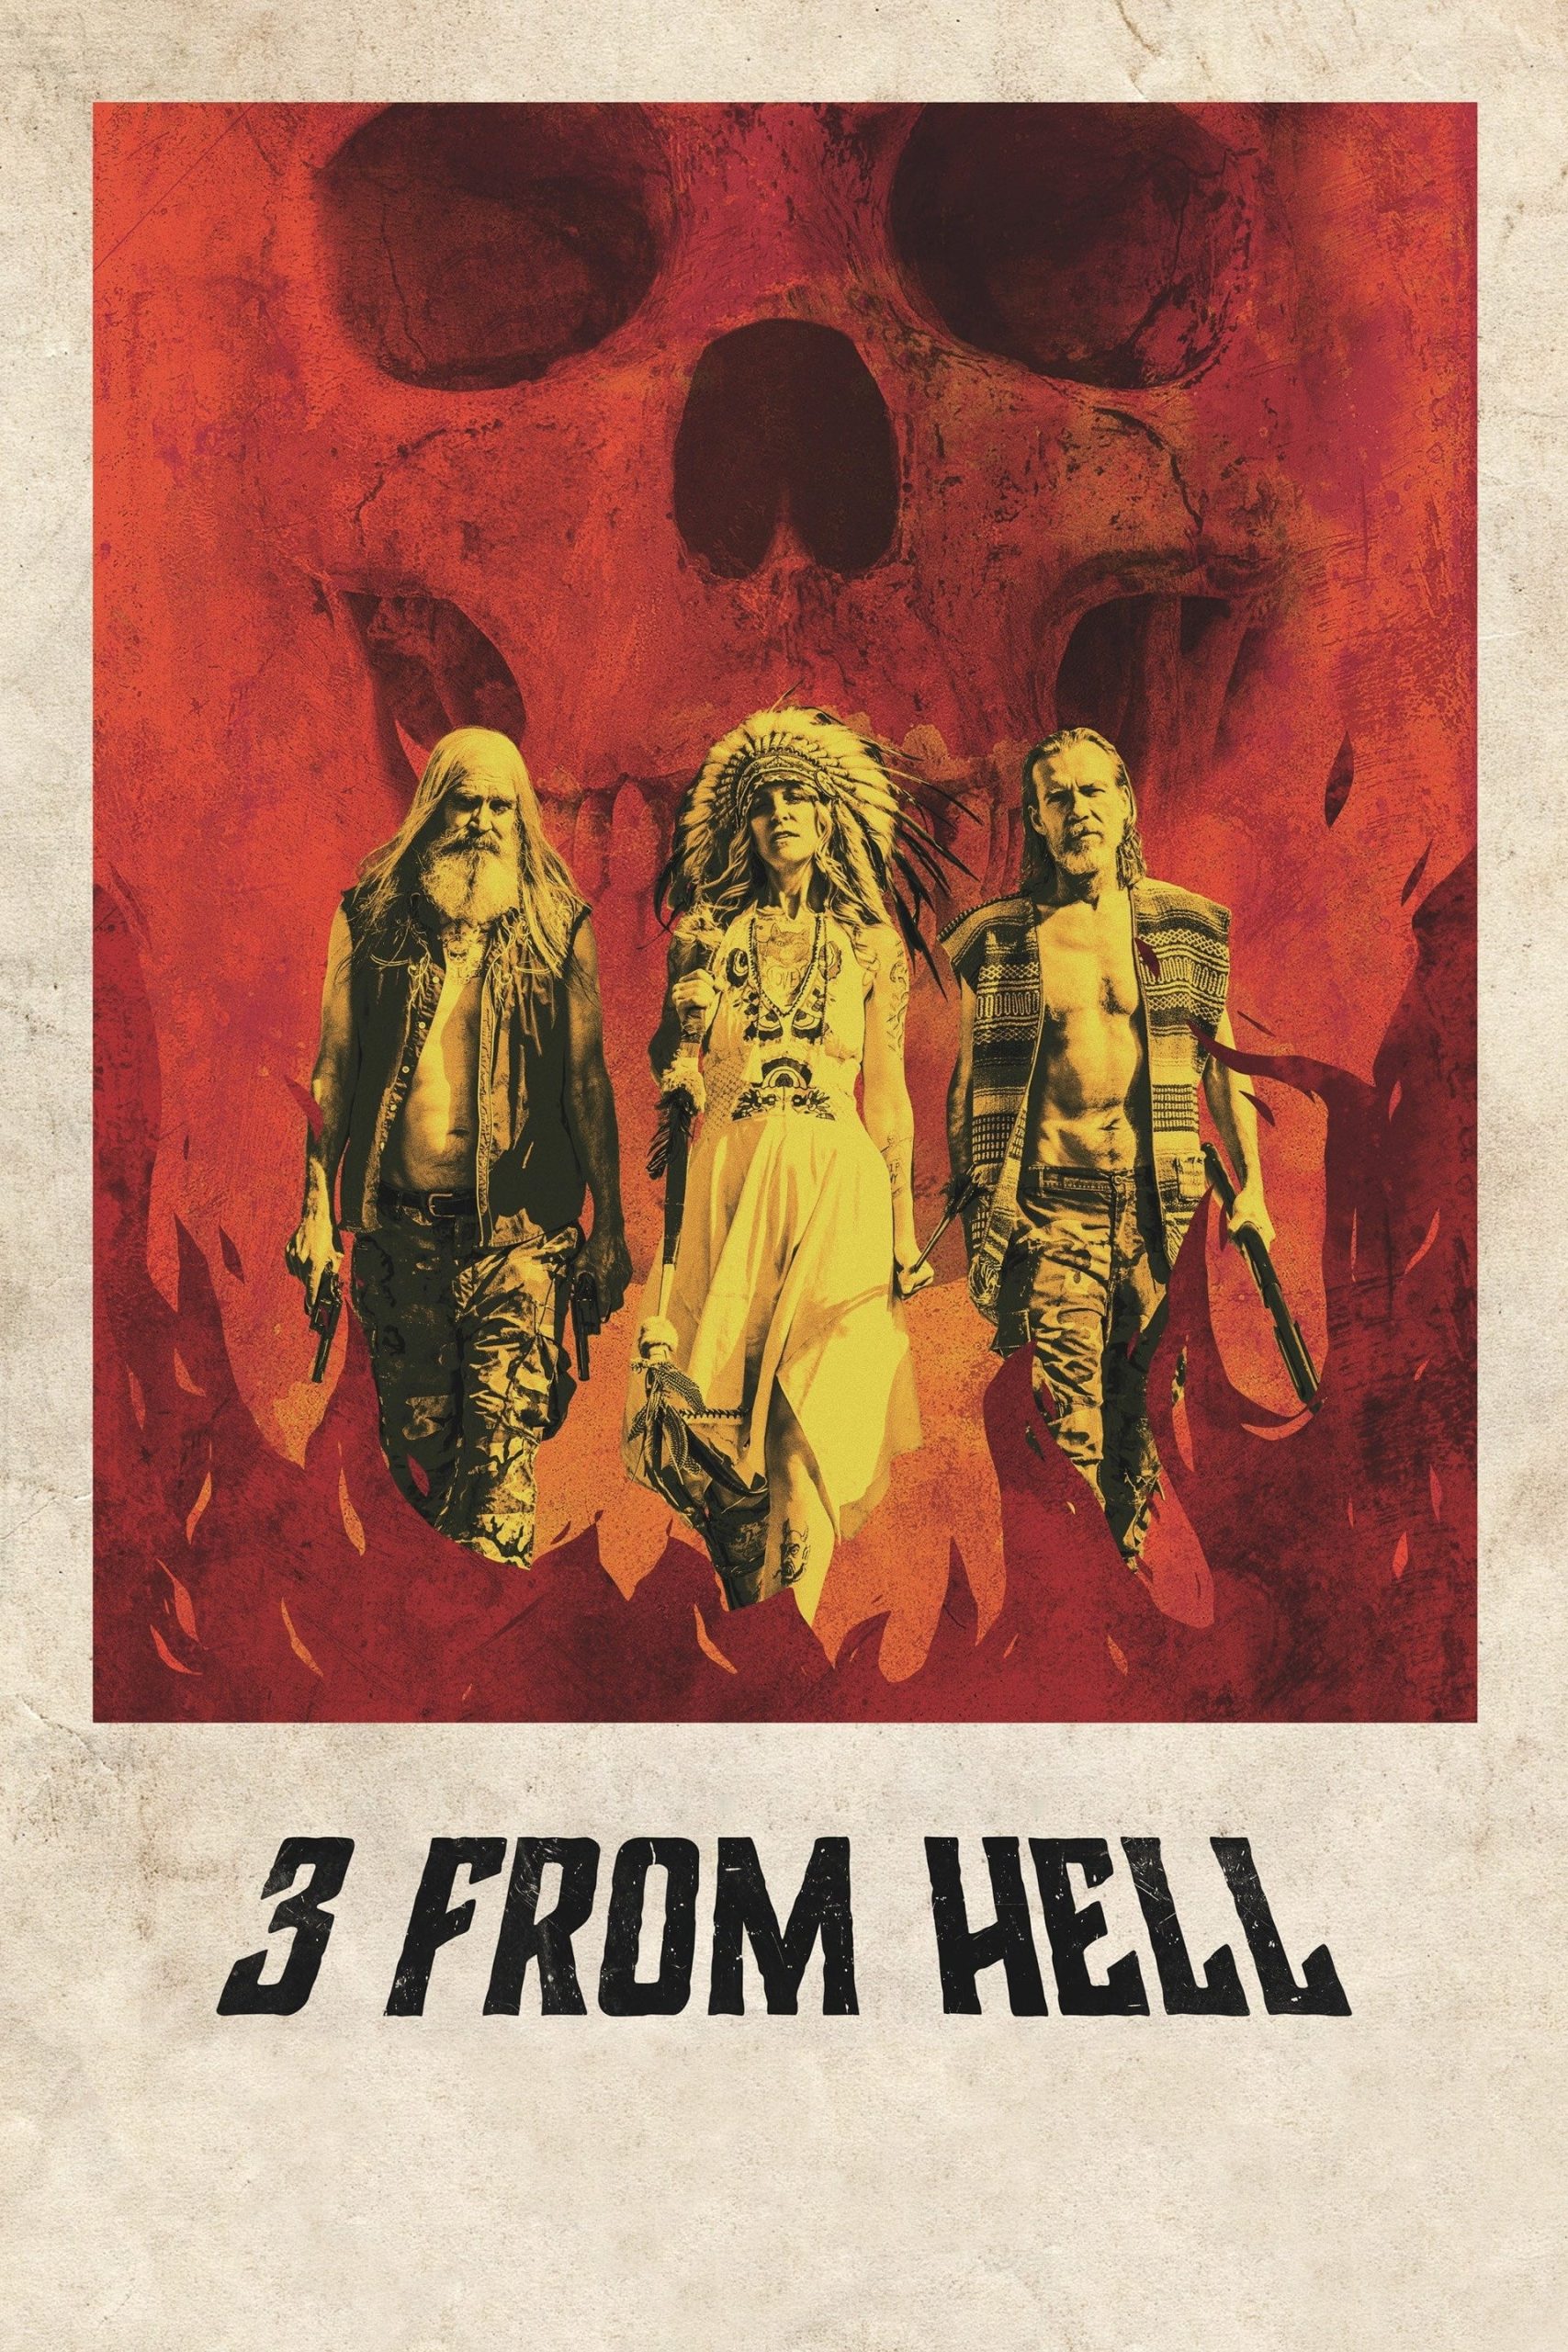 Los 3 del infierno